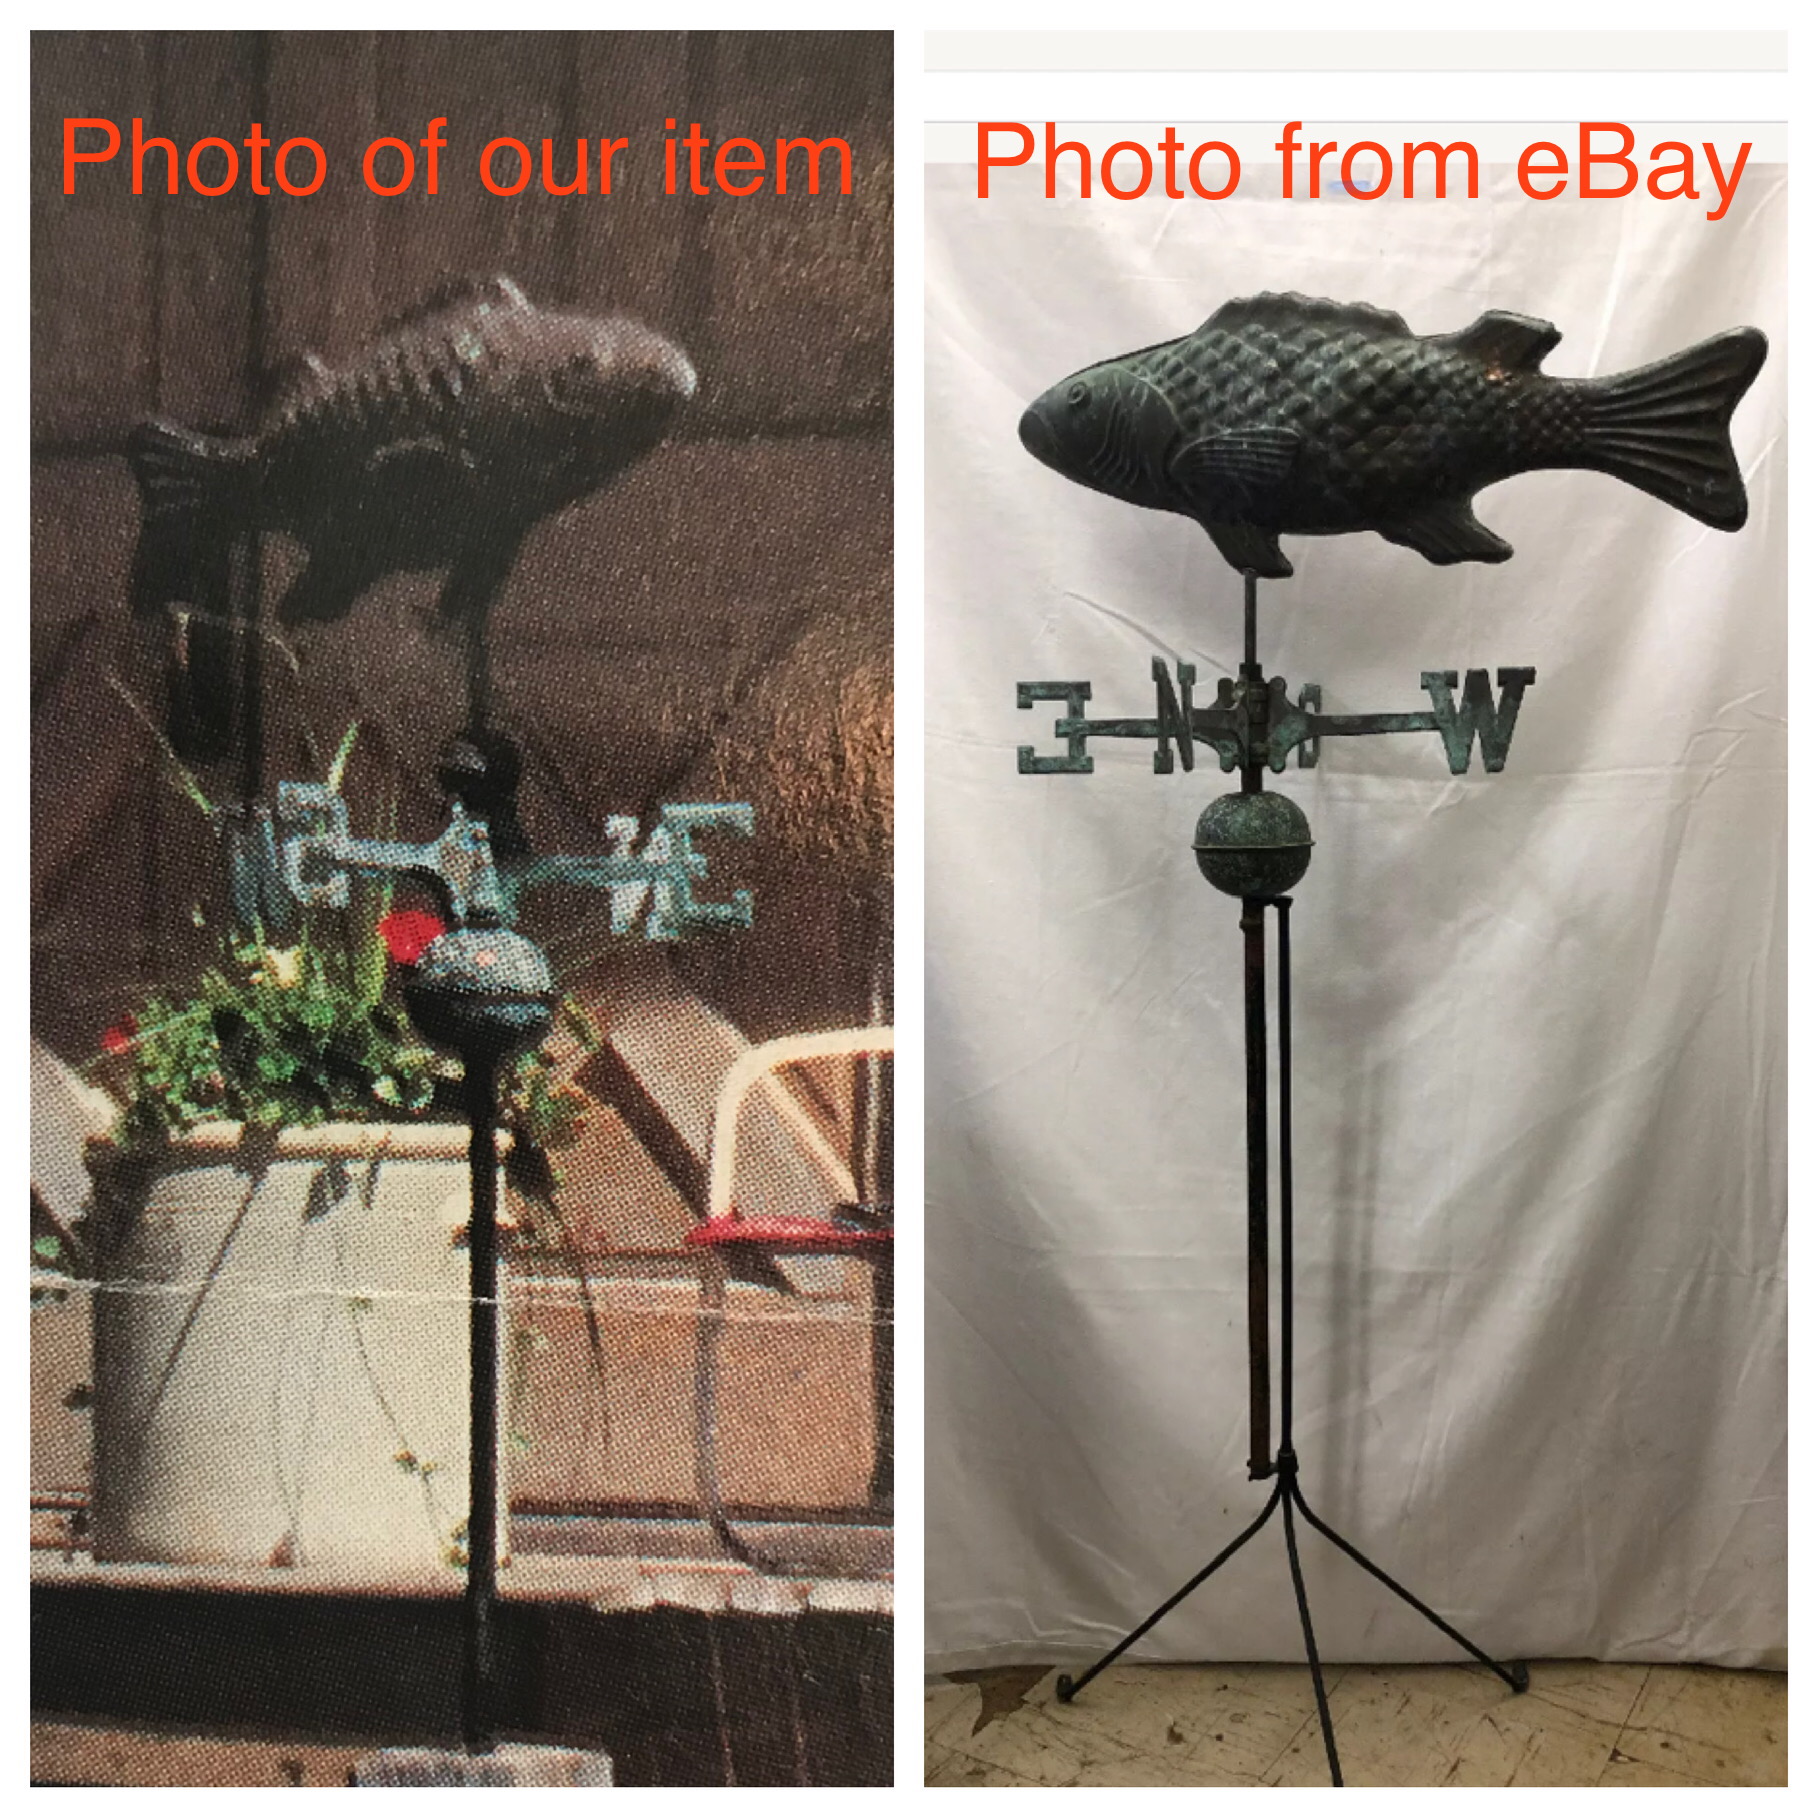 Pic of our UNIQUE ANTIQUE item vs their eBay post